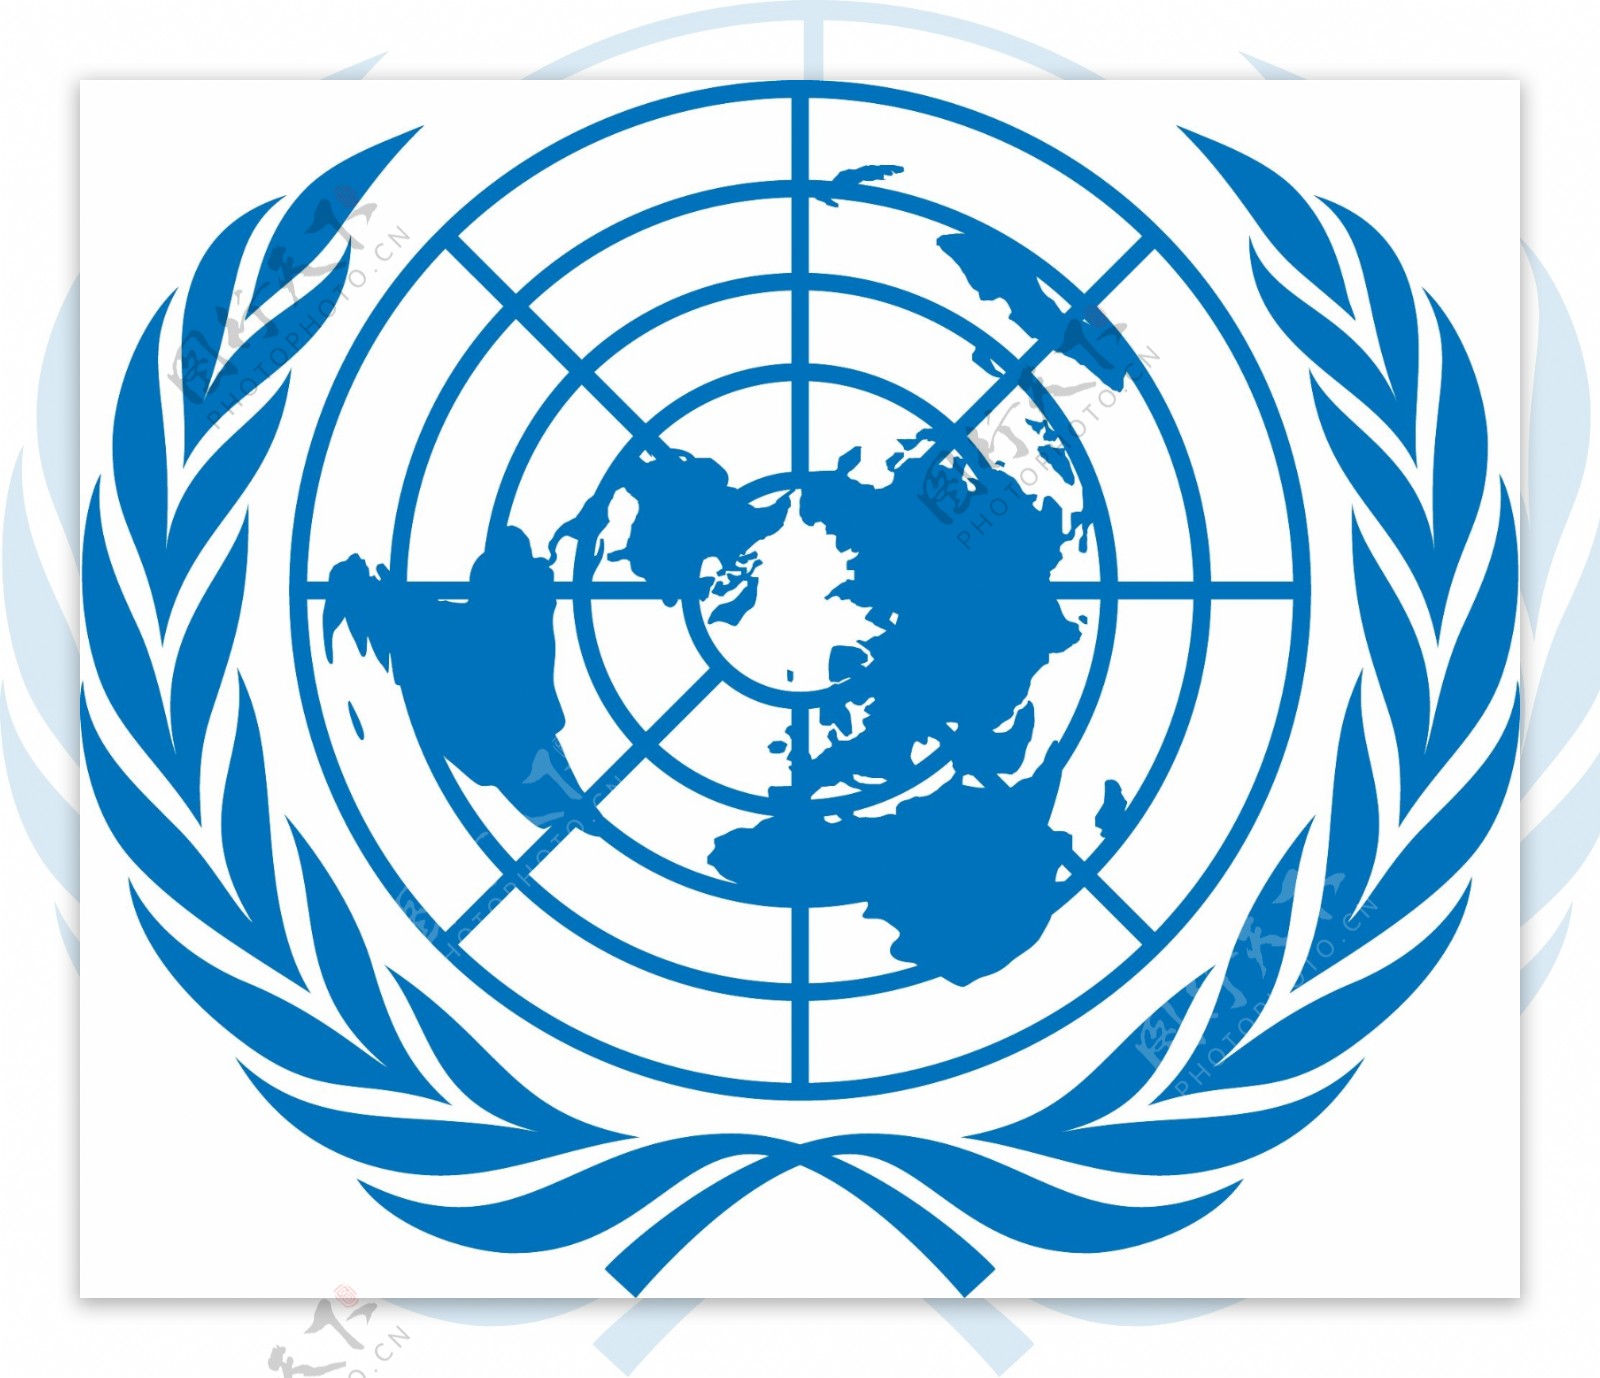 UN联合国标志徽章LOGO矢量素材